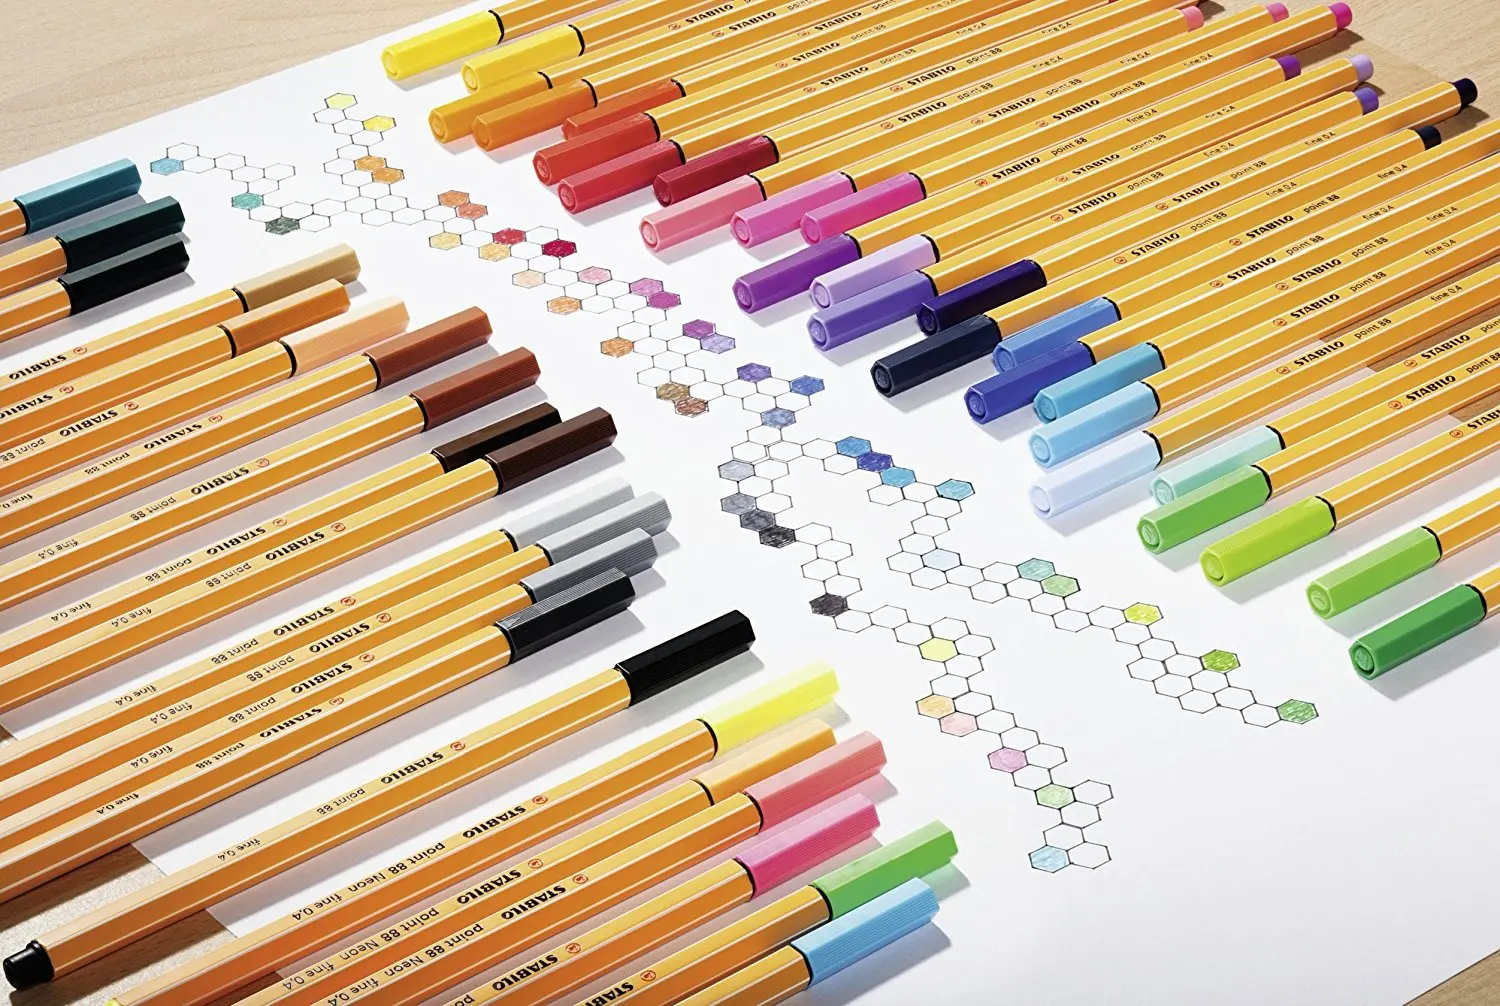 Stabilo Point 88 набор ручек кошелек набор микрон лайнер волоконные ручки Эскиз Маркер Цветные Рисование манга школьные товары для рукоделия